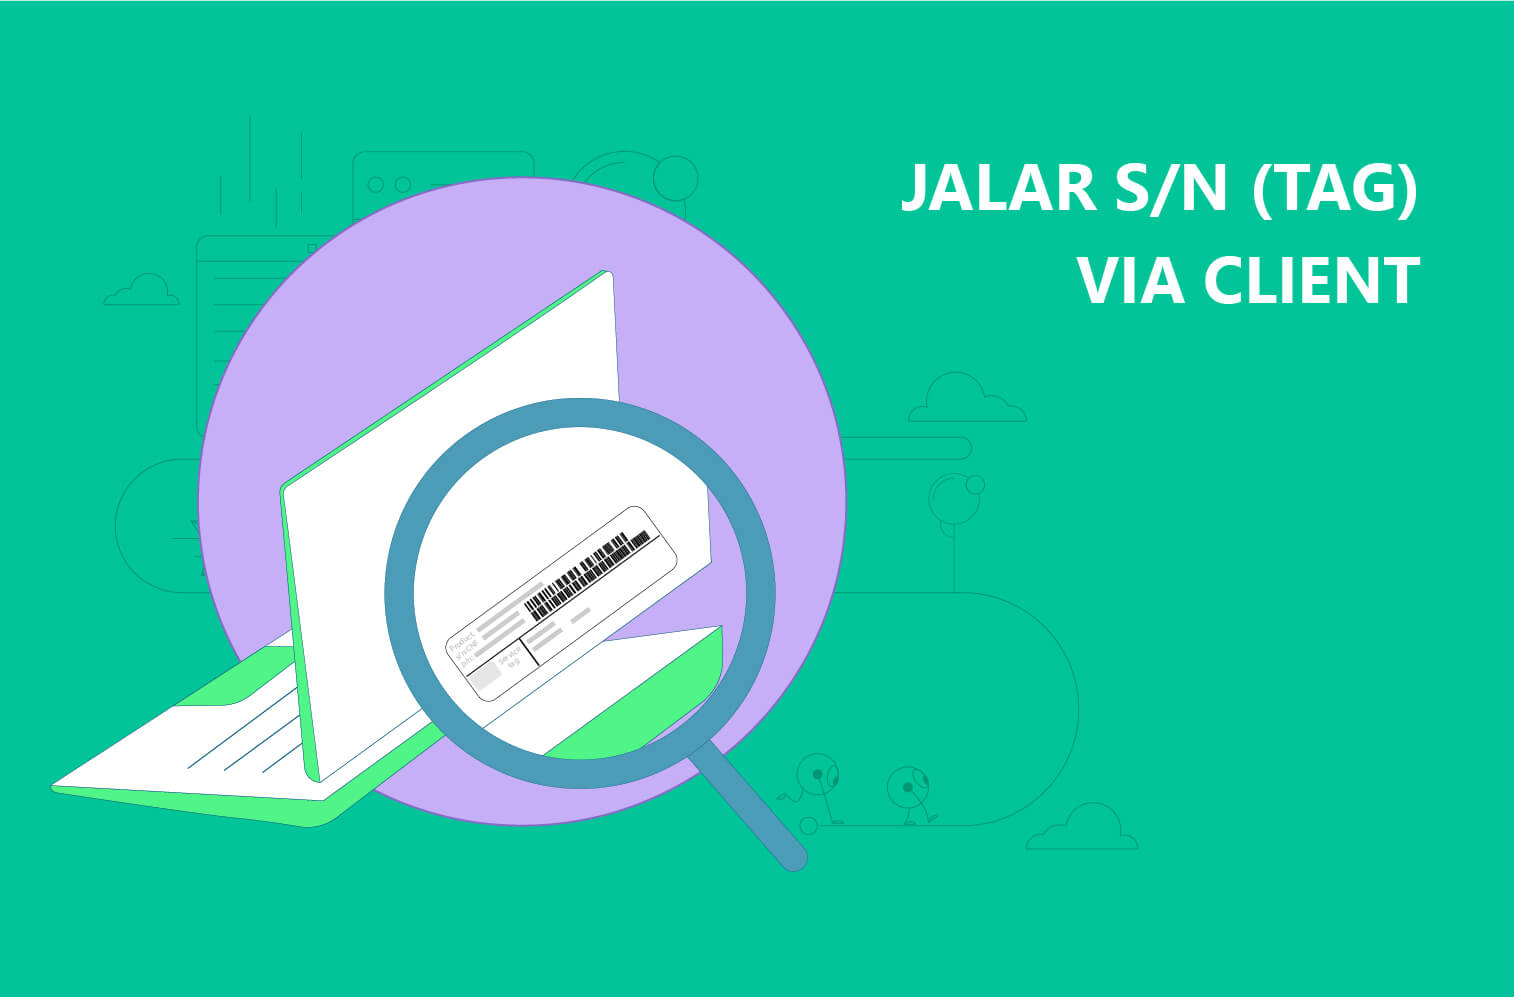 Jalar Serial Number via Client